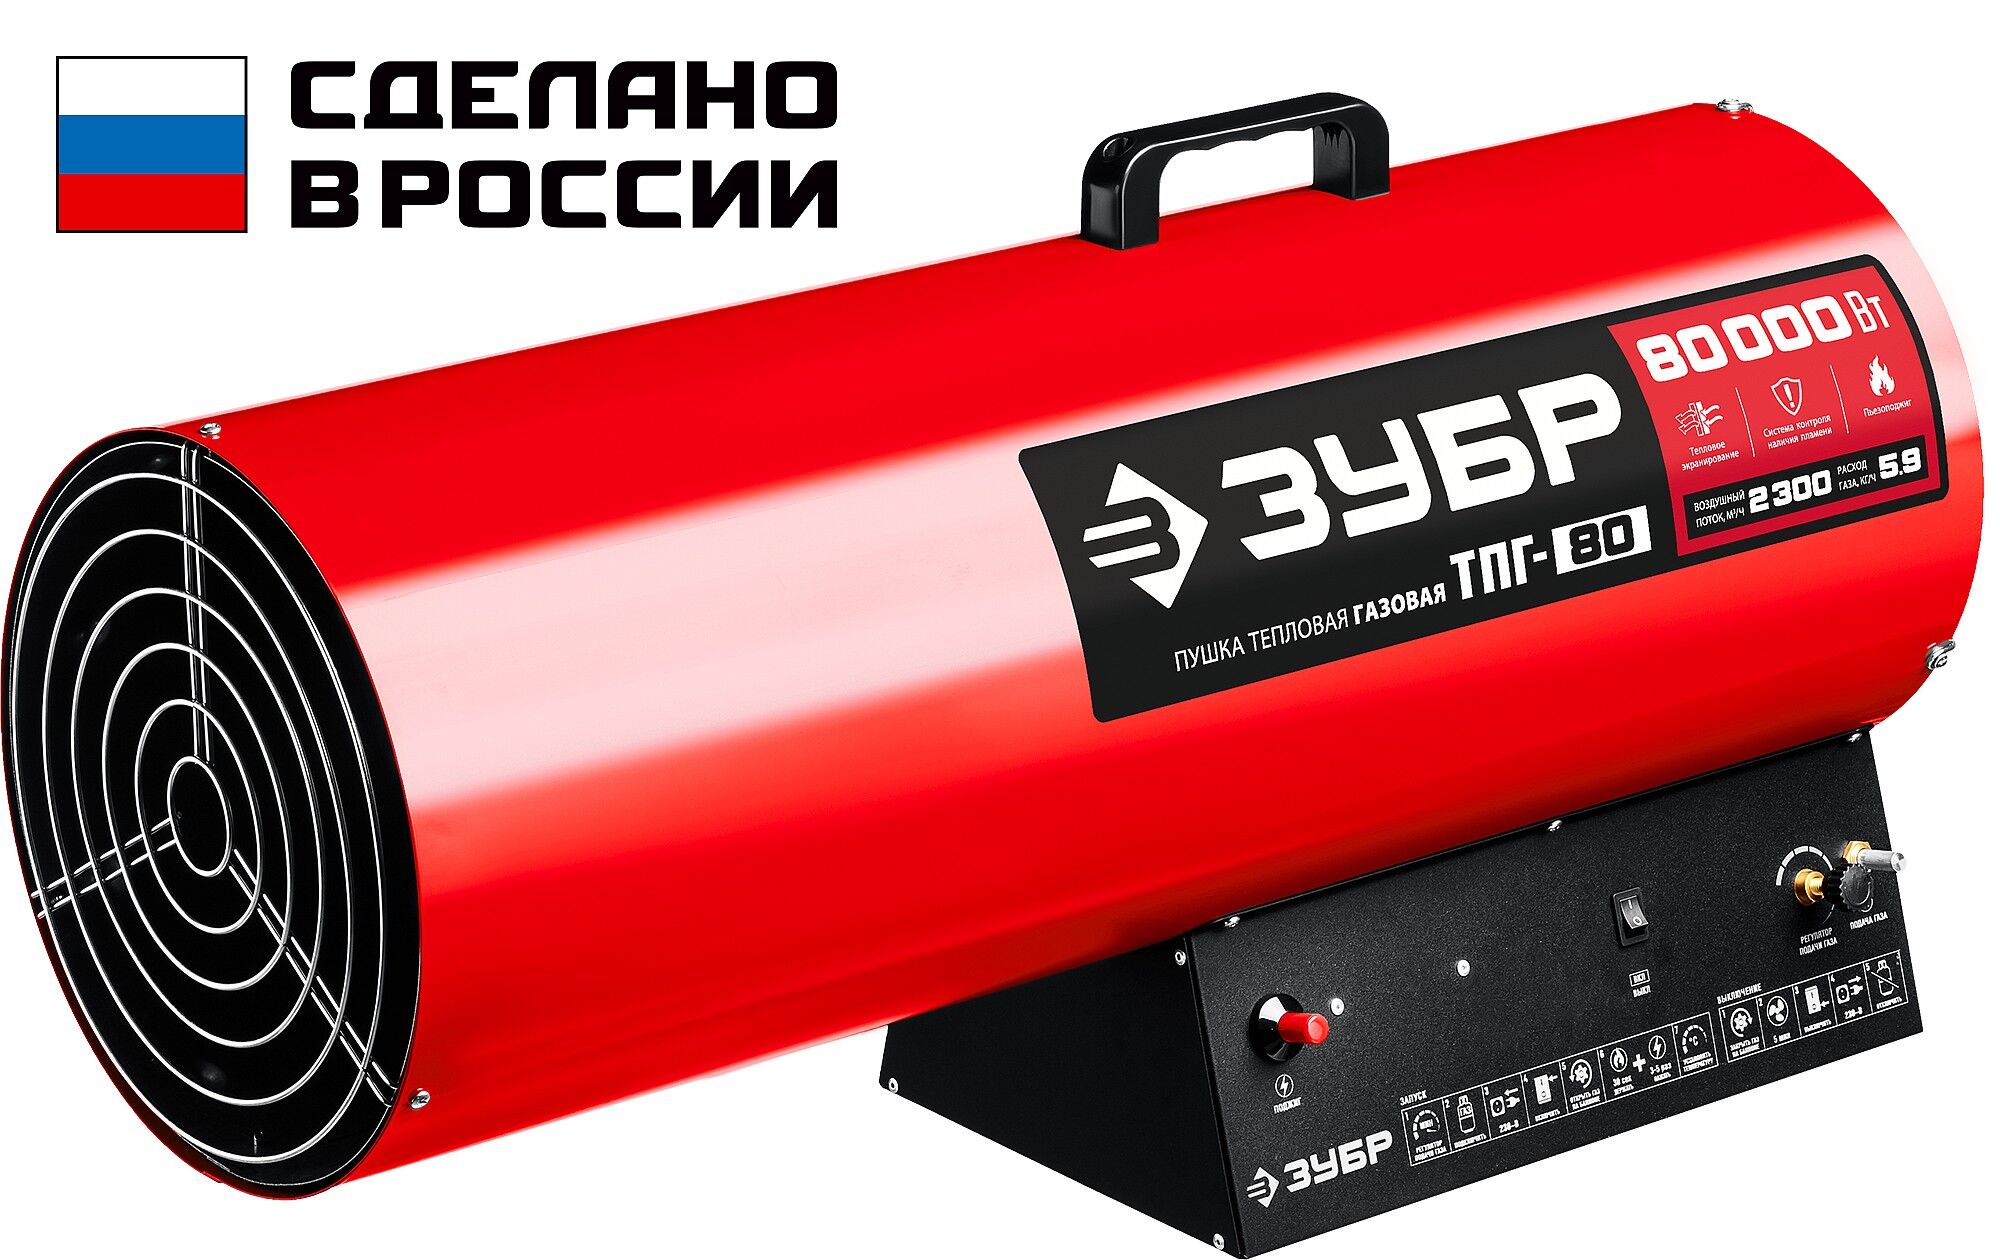 ЗУБР 80 кВт, газовая тепловая пушка (ТПГ-80) Зубр